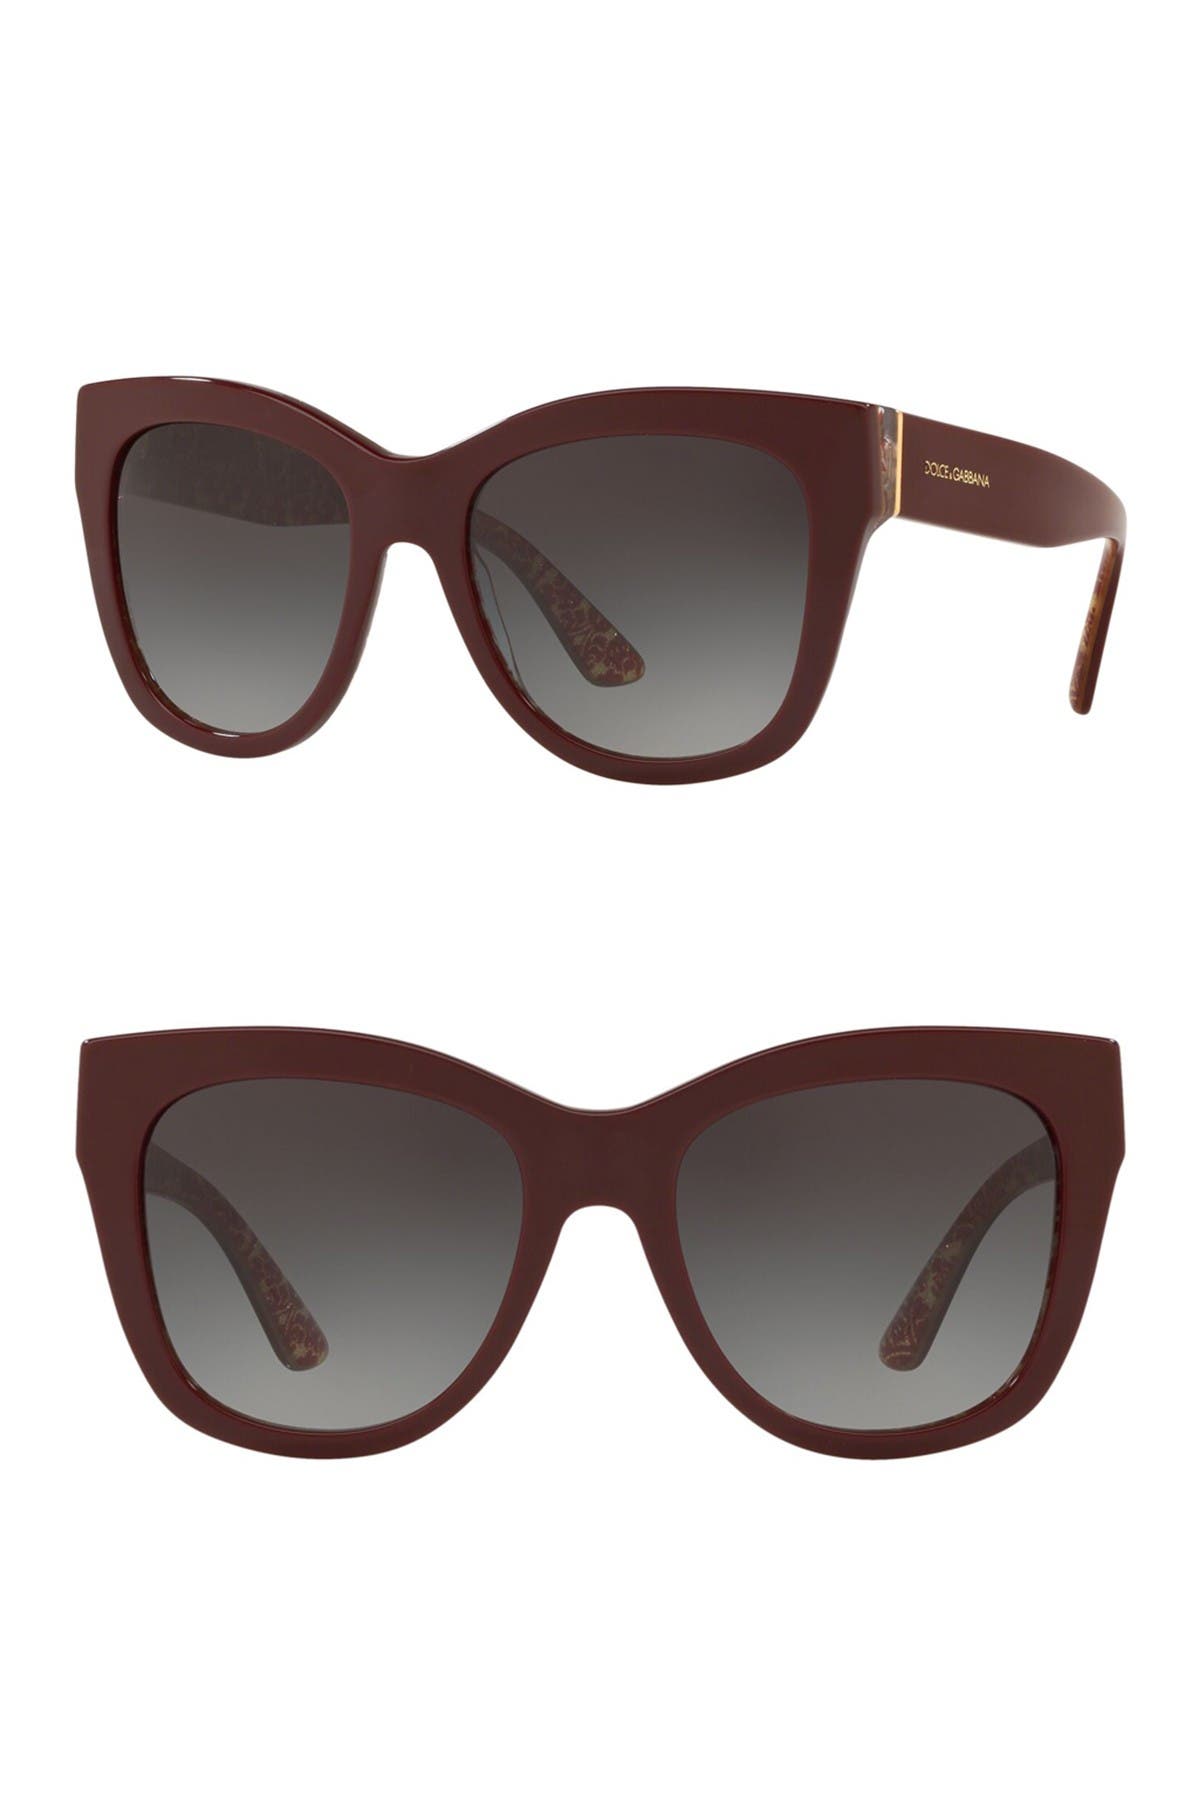 dolce & gabbana 55mm wayfarer sunglasses